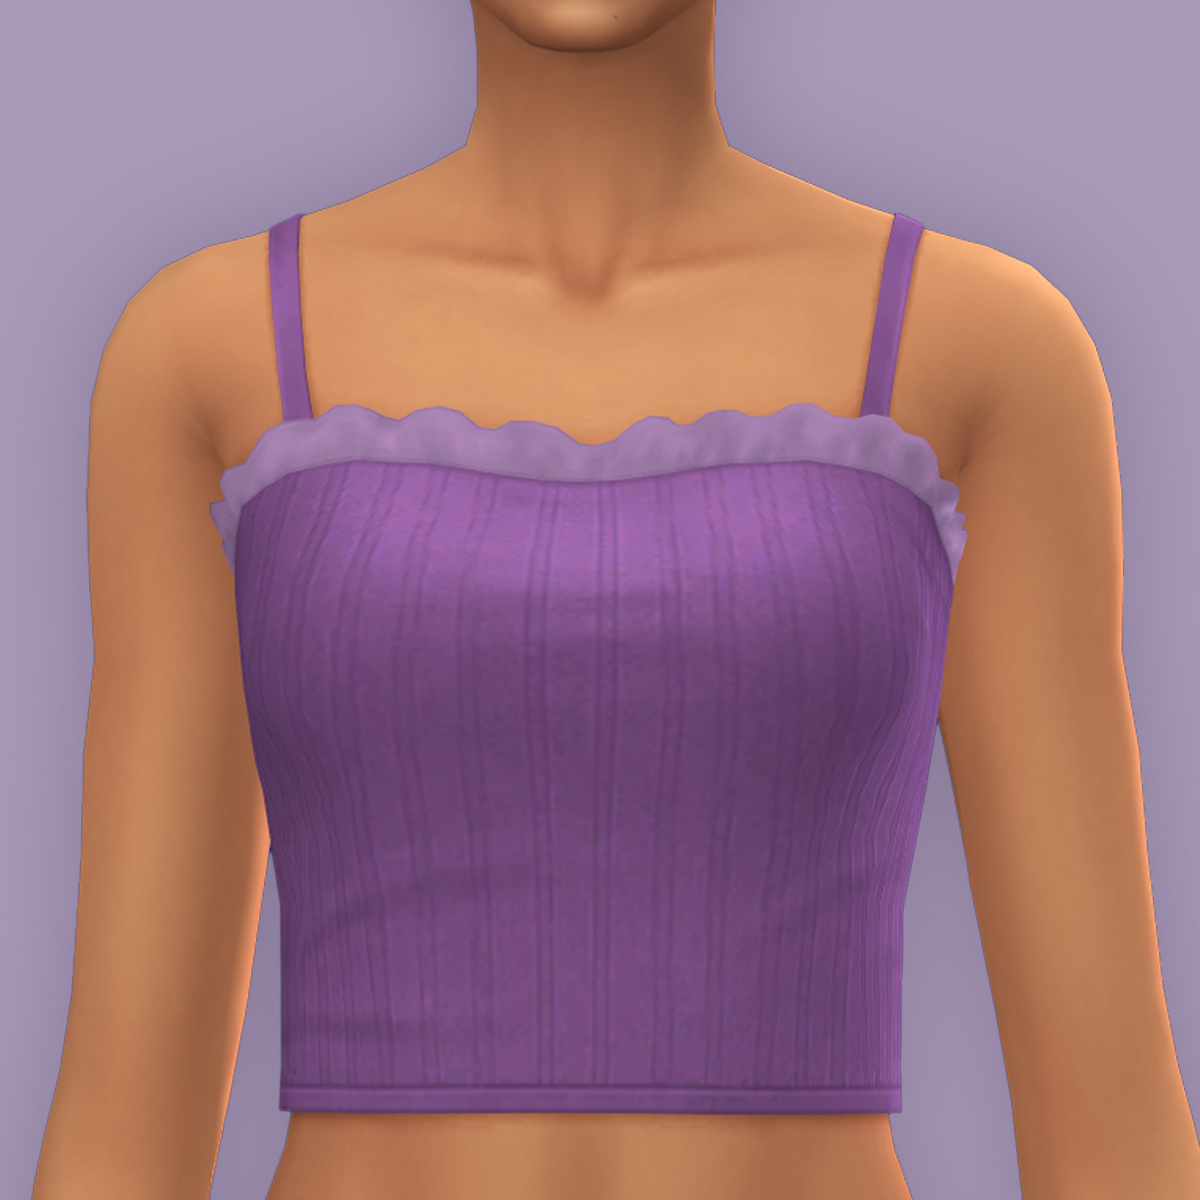 Blair top - The Sims 4 Create a Sim - CurseForge